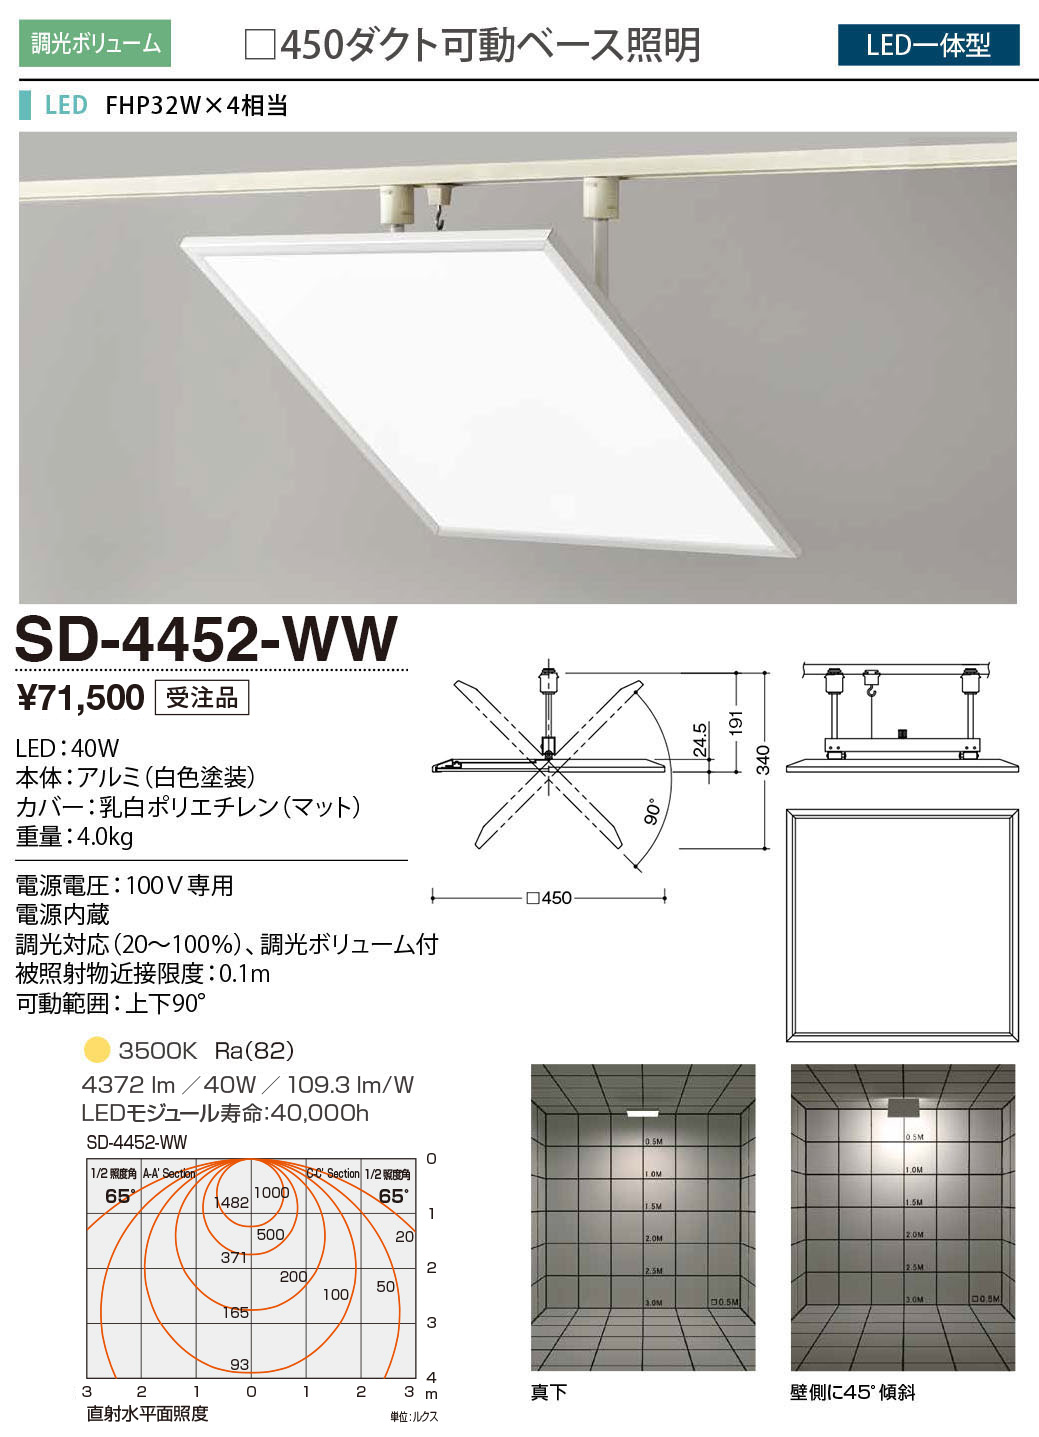 SD-4452-WW